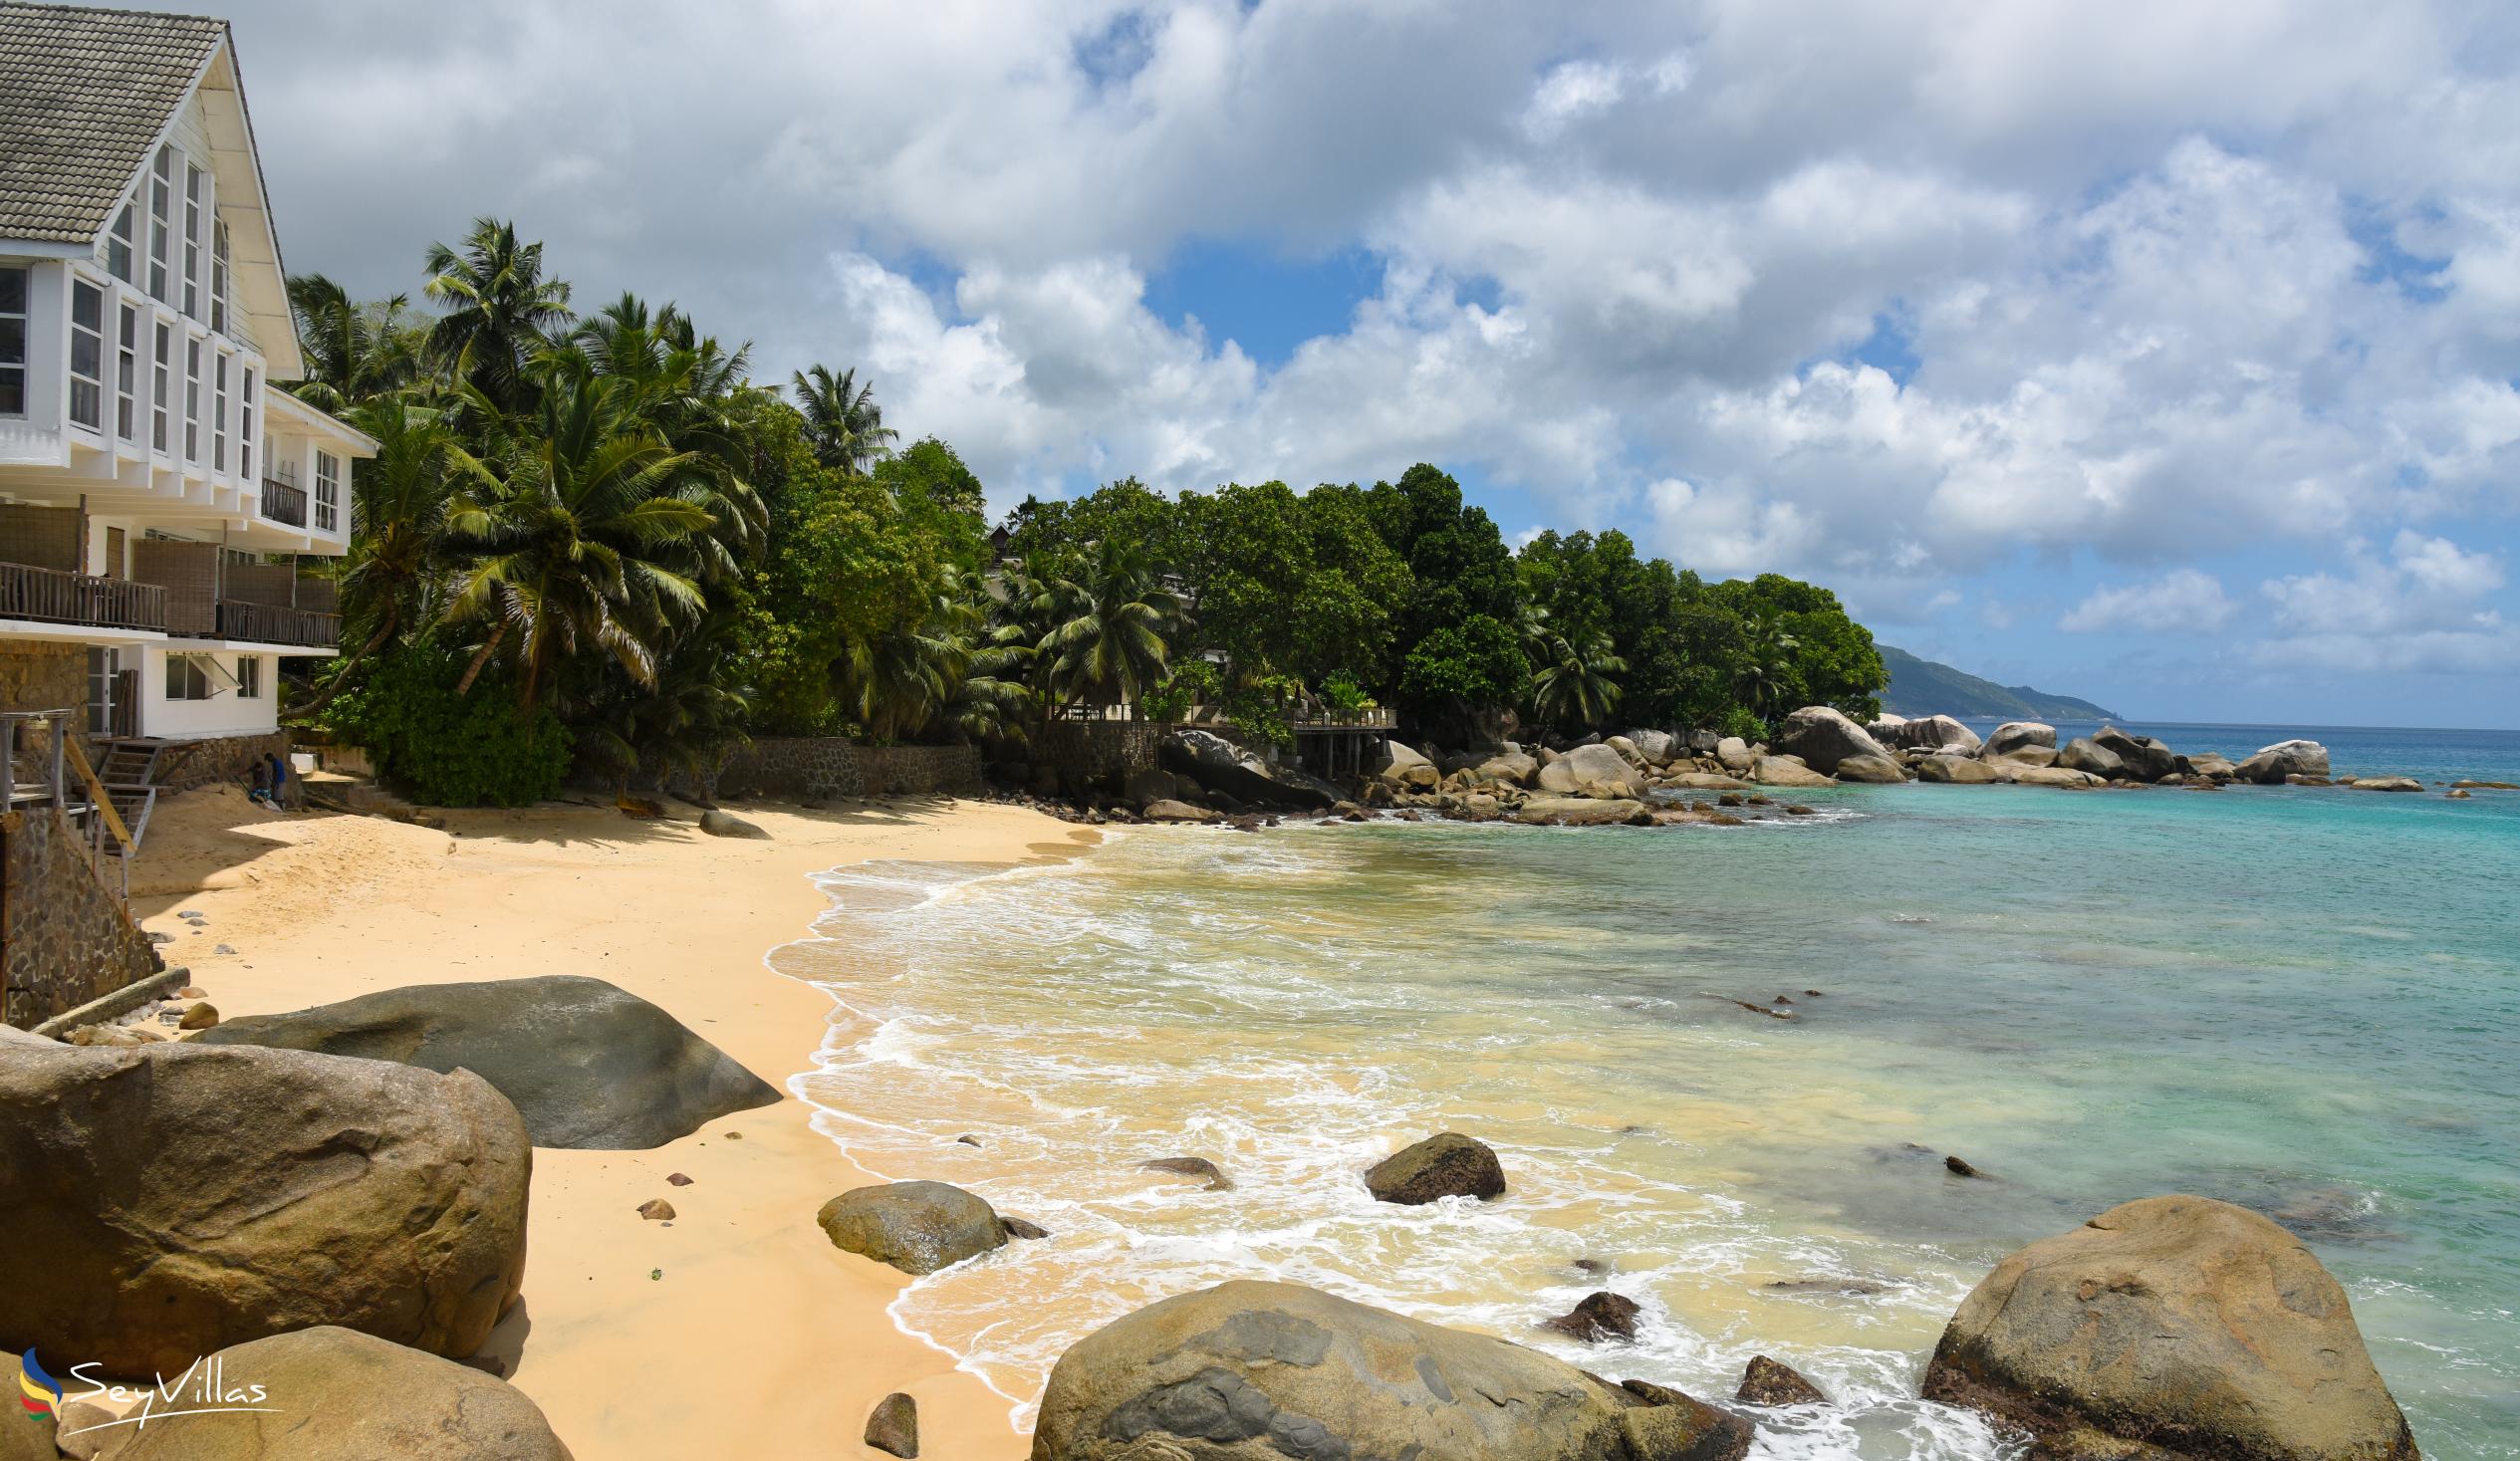 Foto 6: Glacis Beach - Mahé (Seychelles)